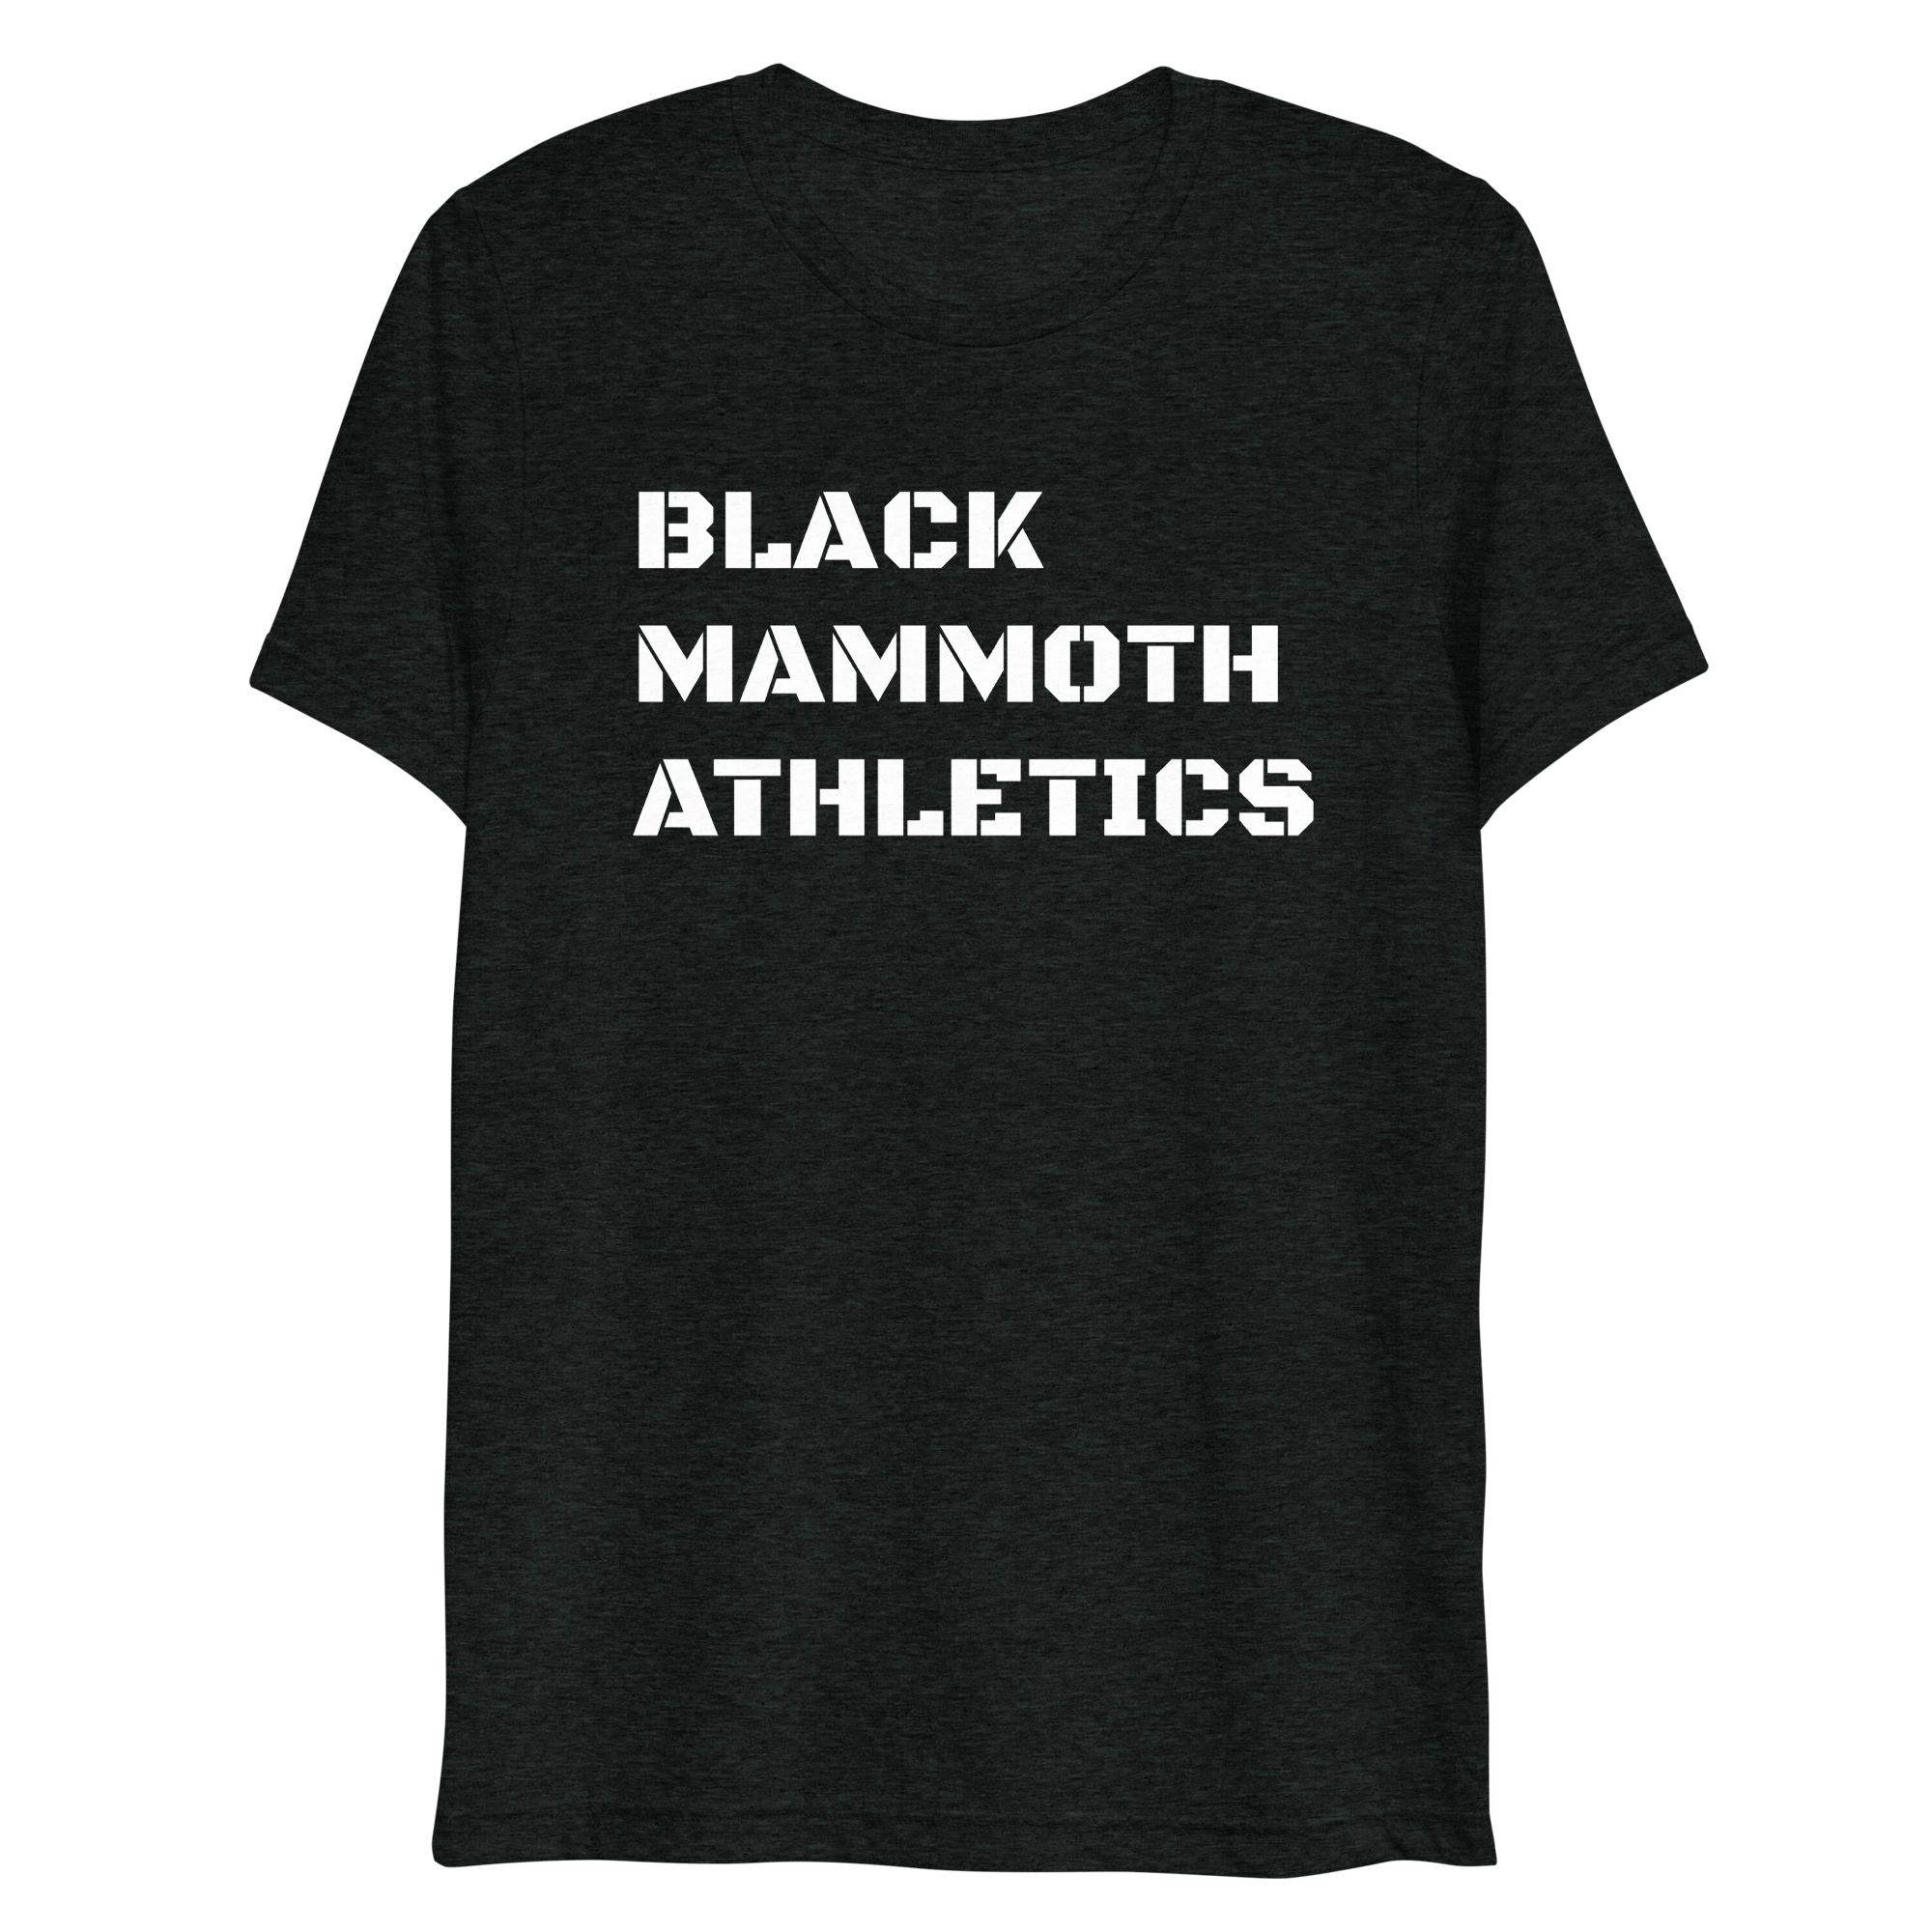 BM Athletics t-shirt (dark)